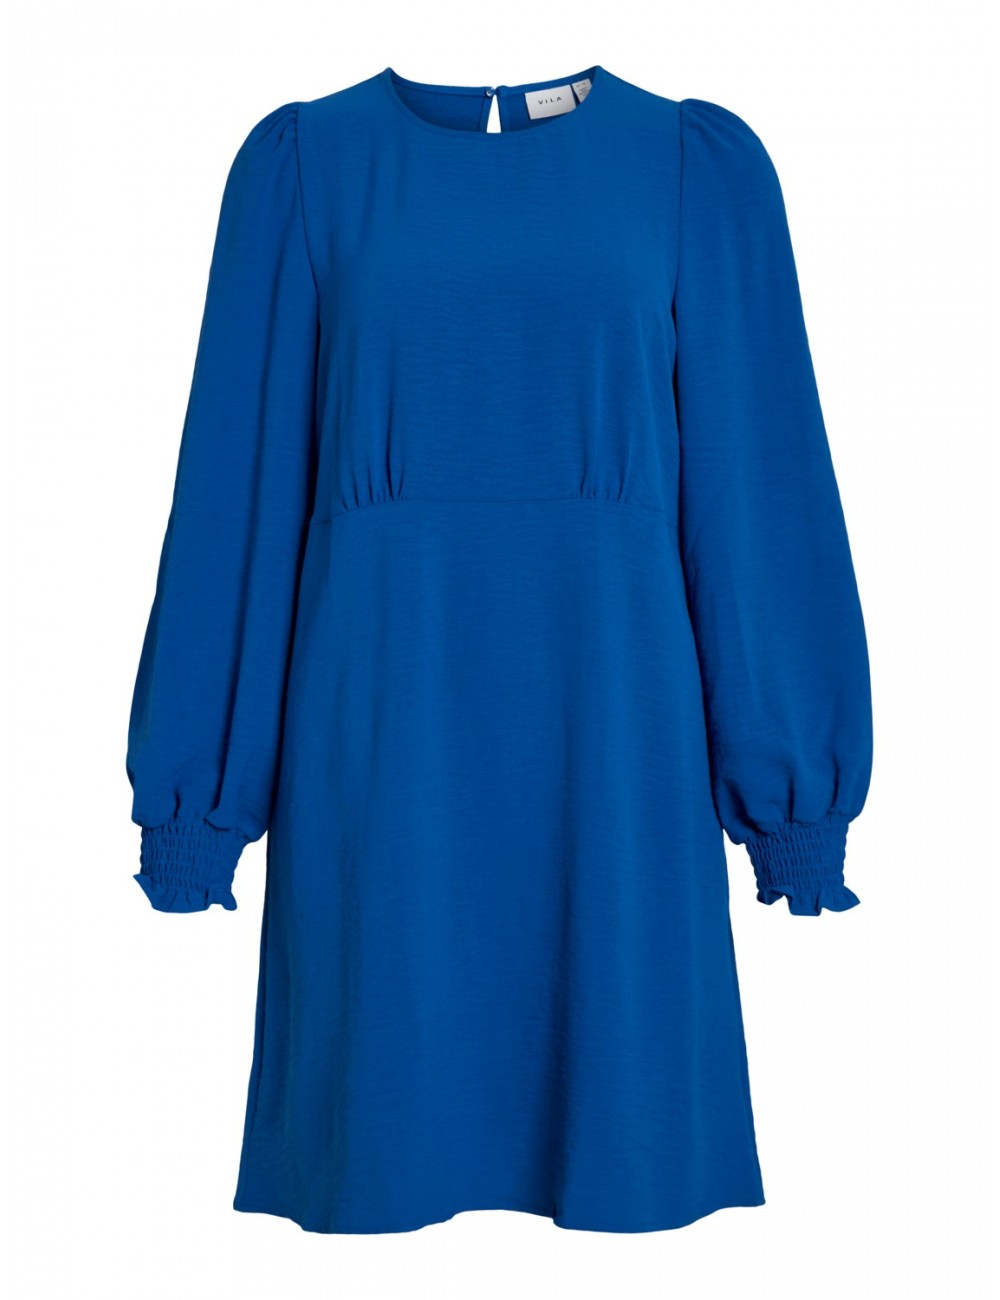 Vestido básico modelo Gaja en color azul. Marca Vila.